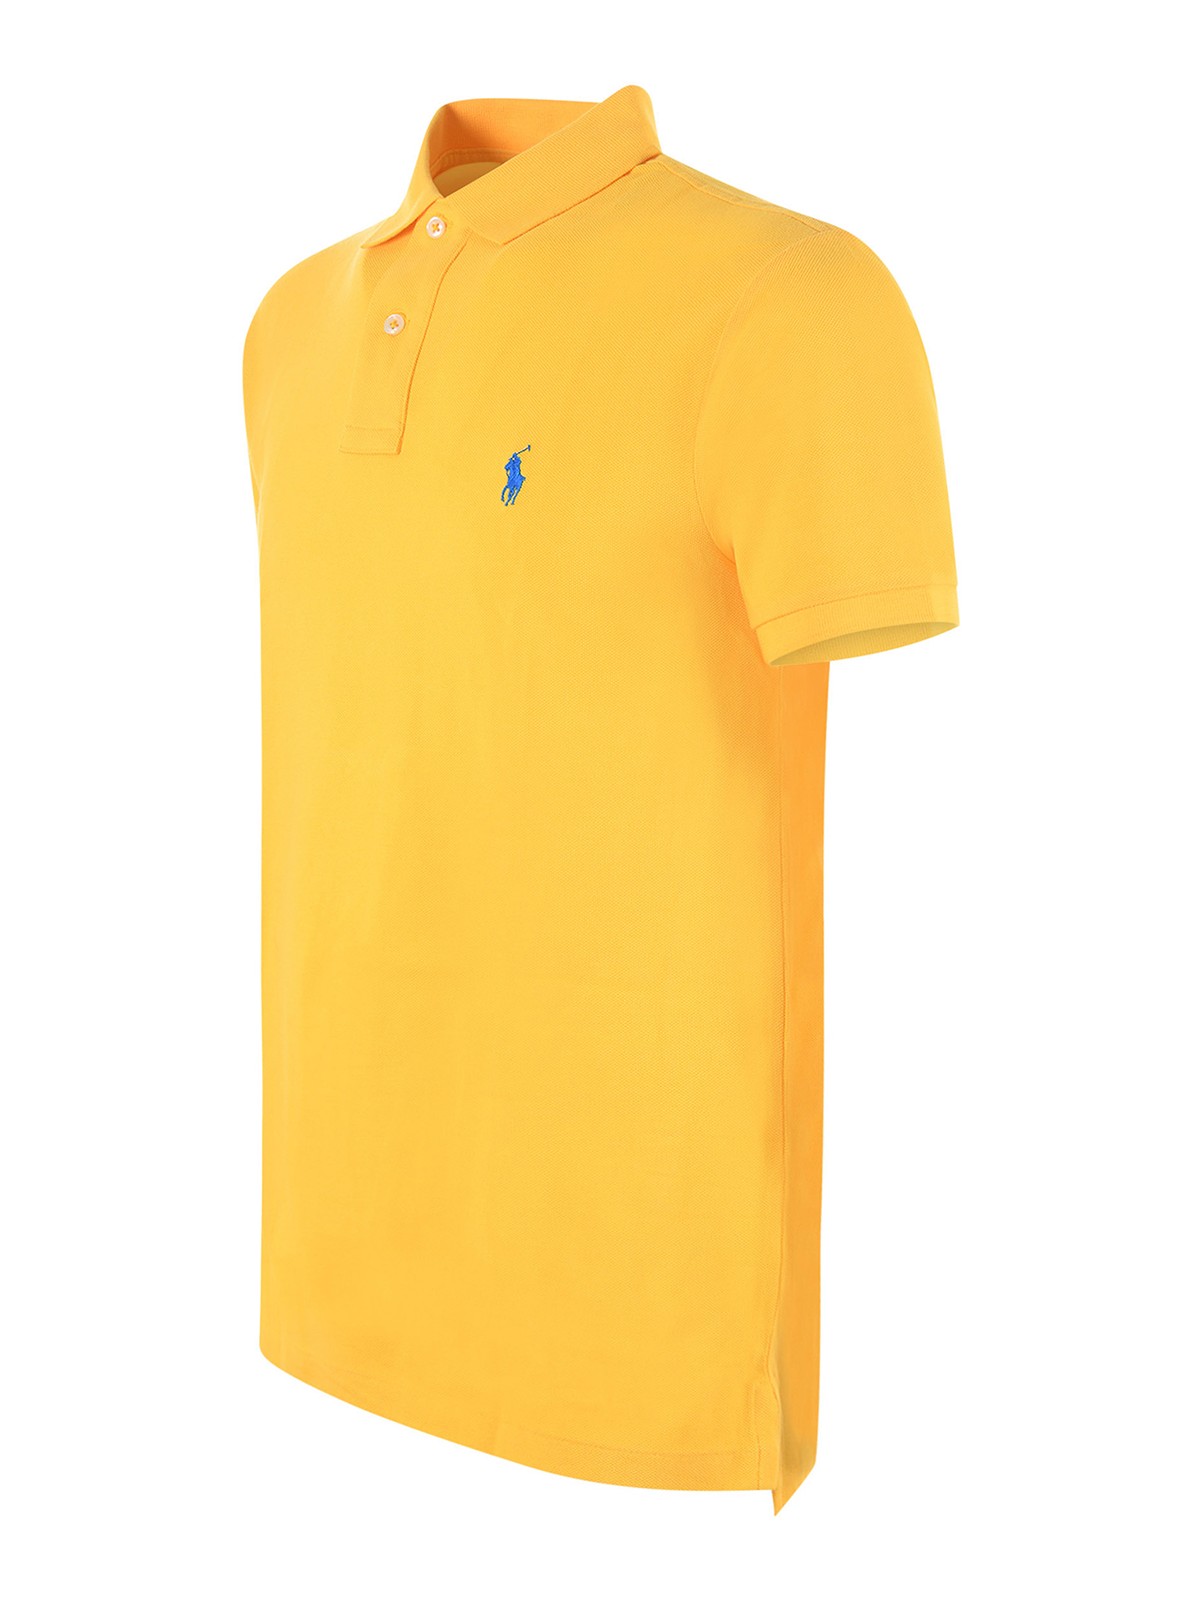 Shop Polo Ralph Lauren Polo - Amarillo In Yellow